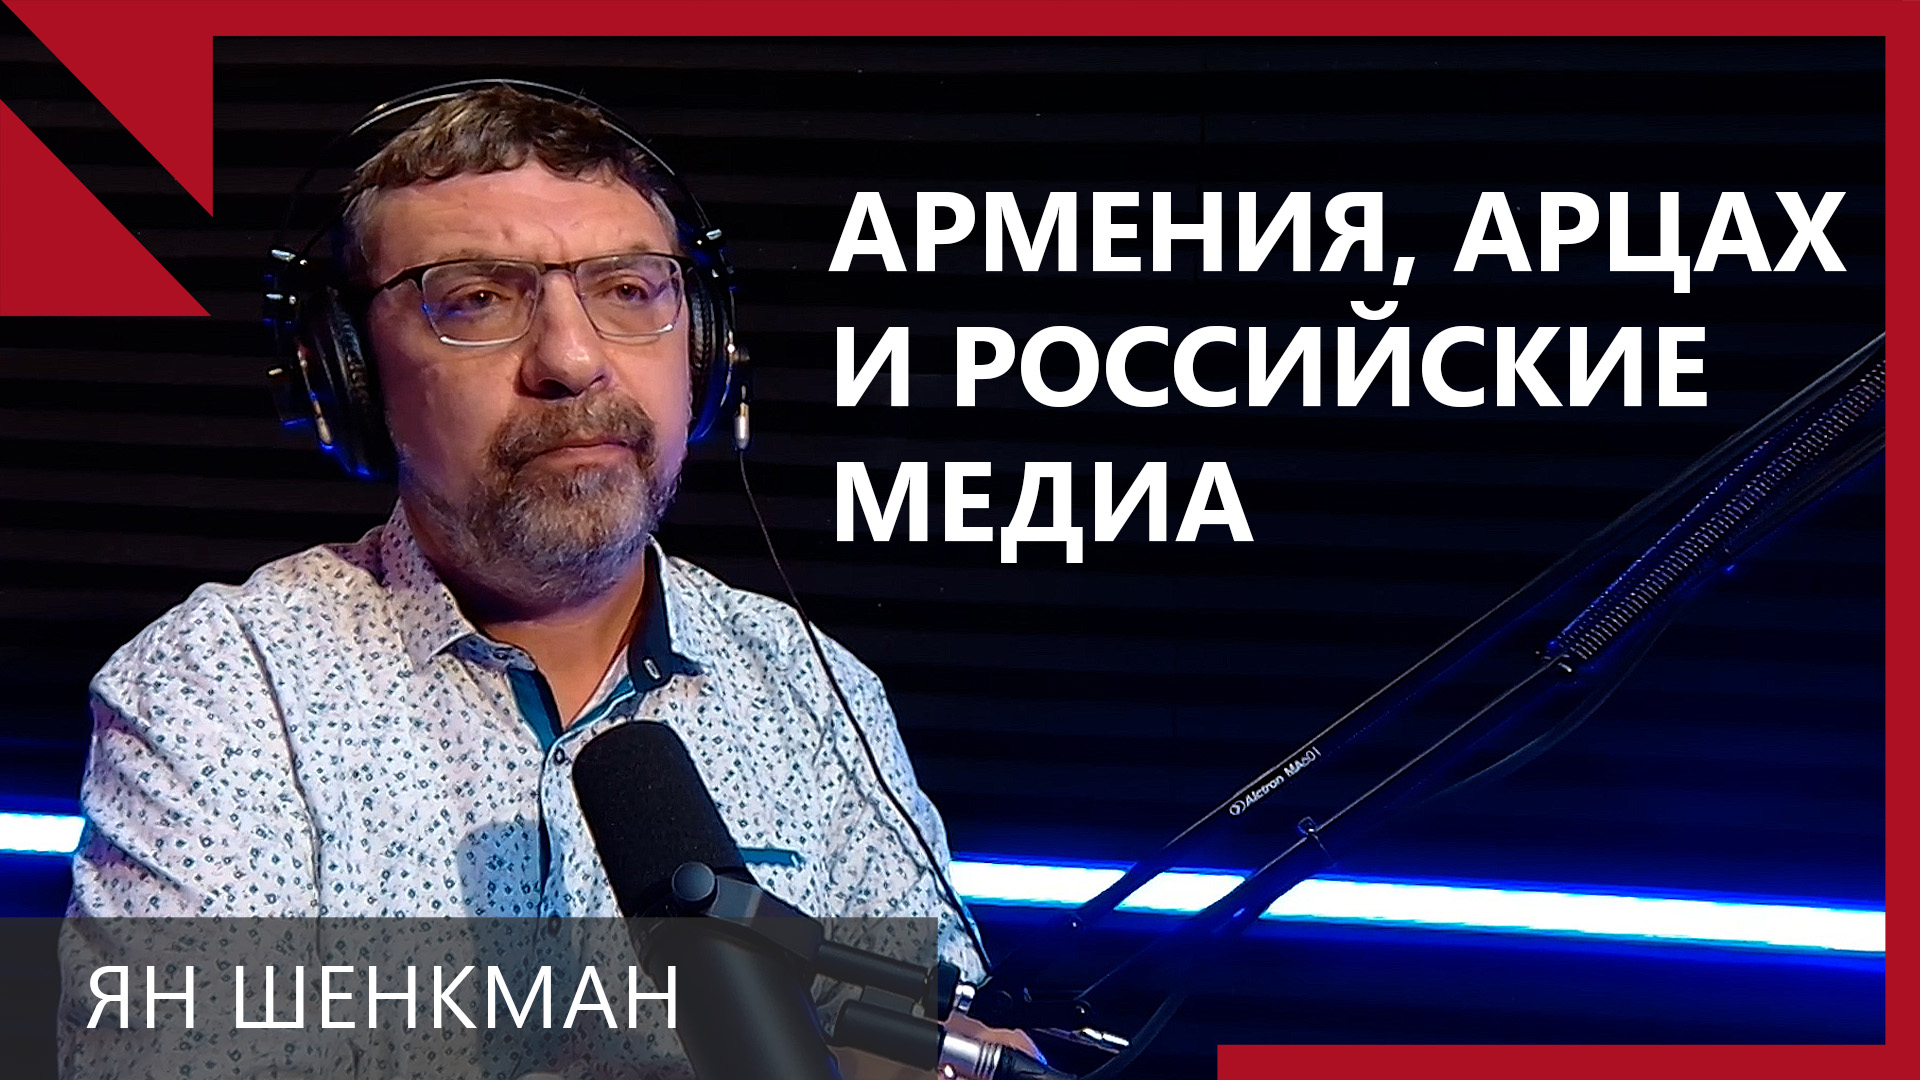 Россия привыкла, что Армения послушная и наказывает ее за контакты с Западом: Ян Шенкман